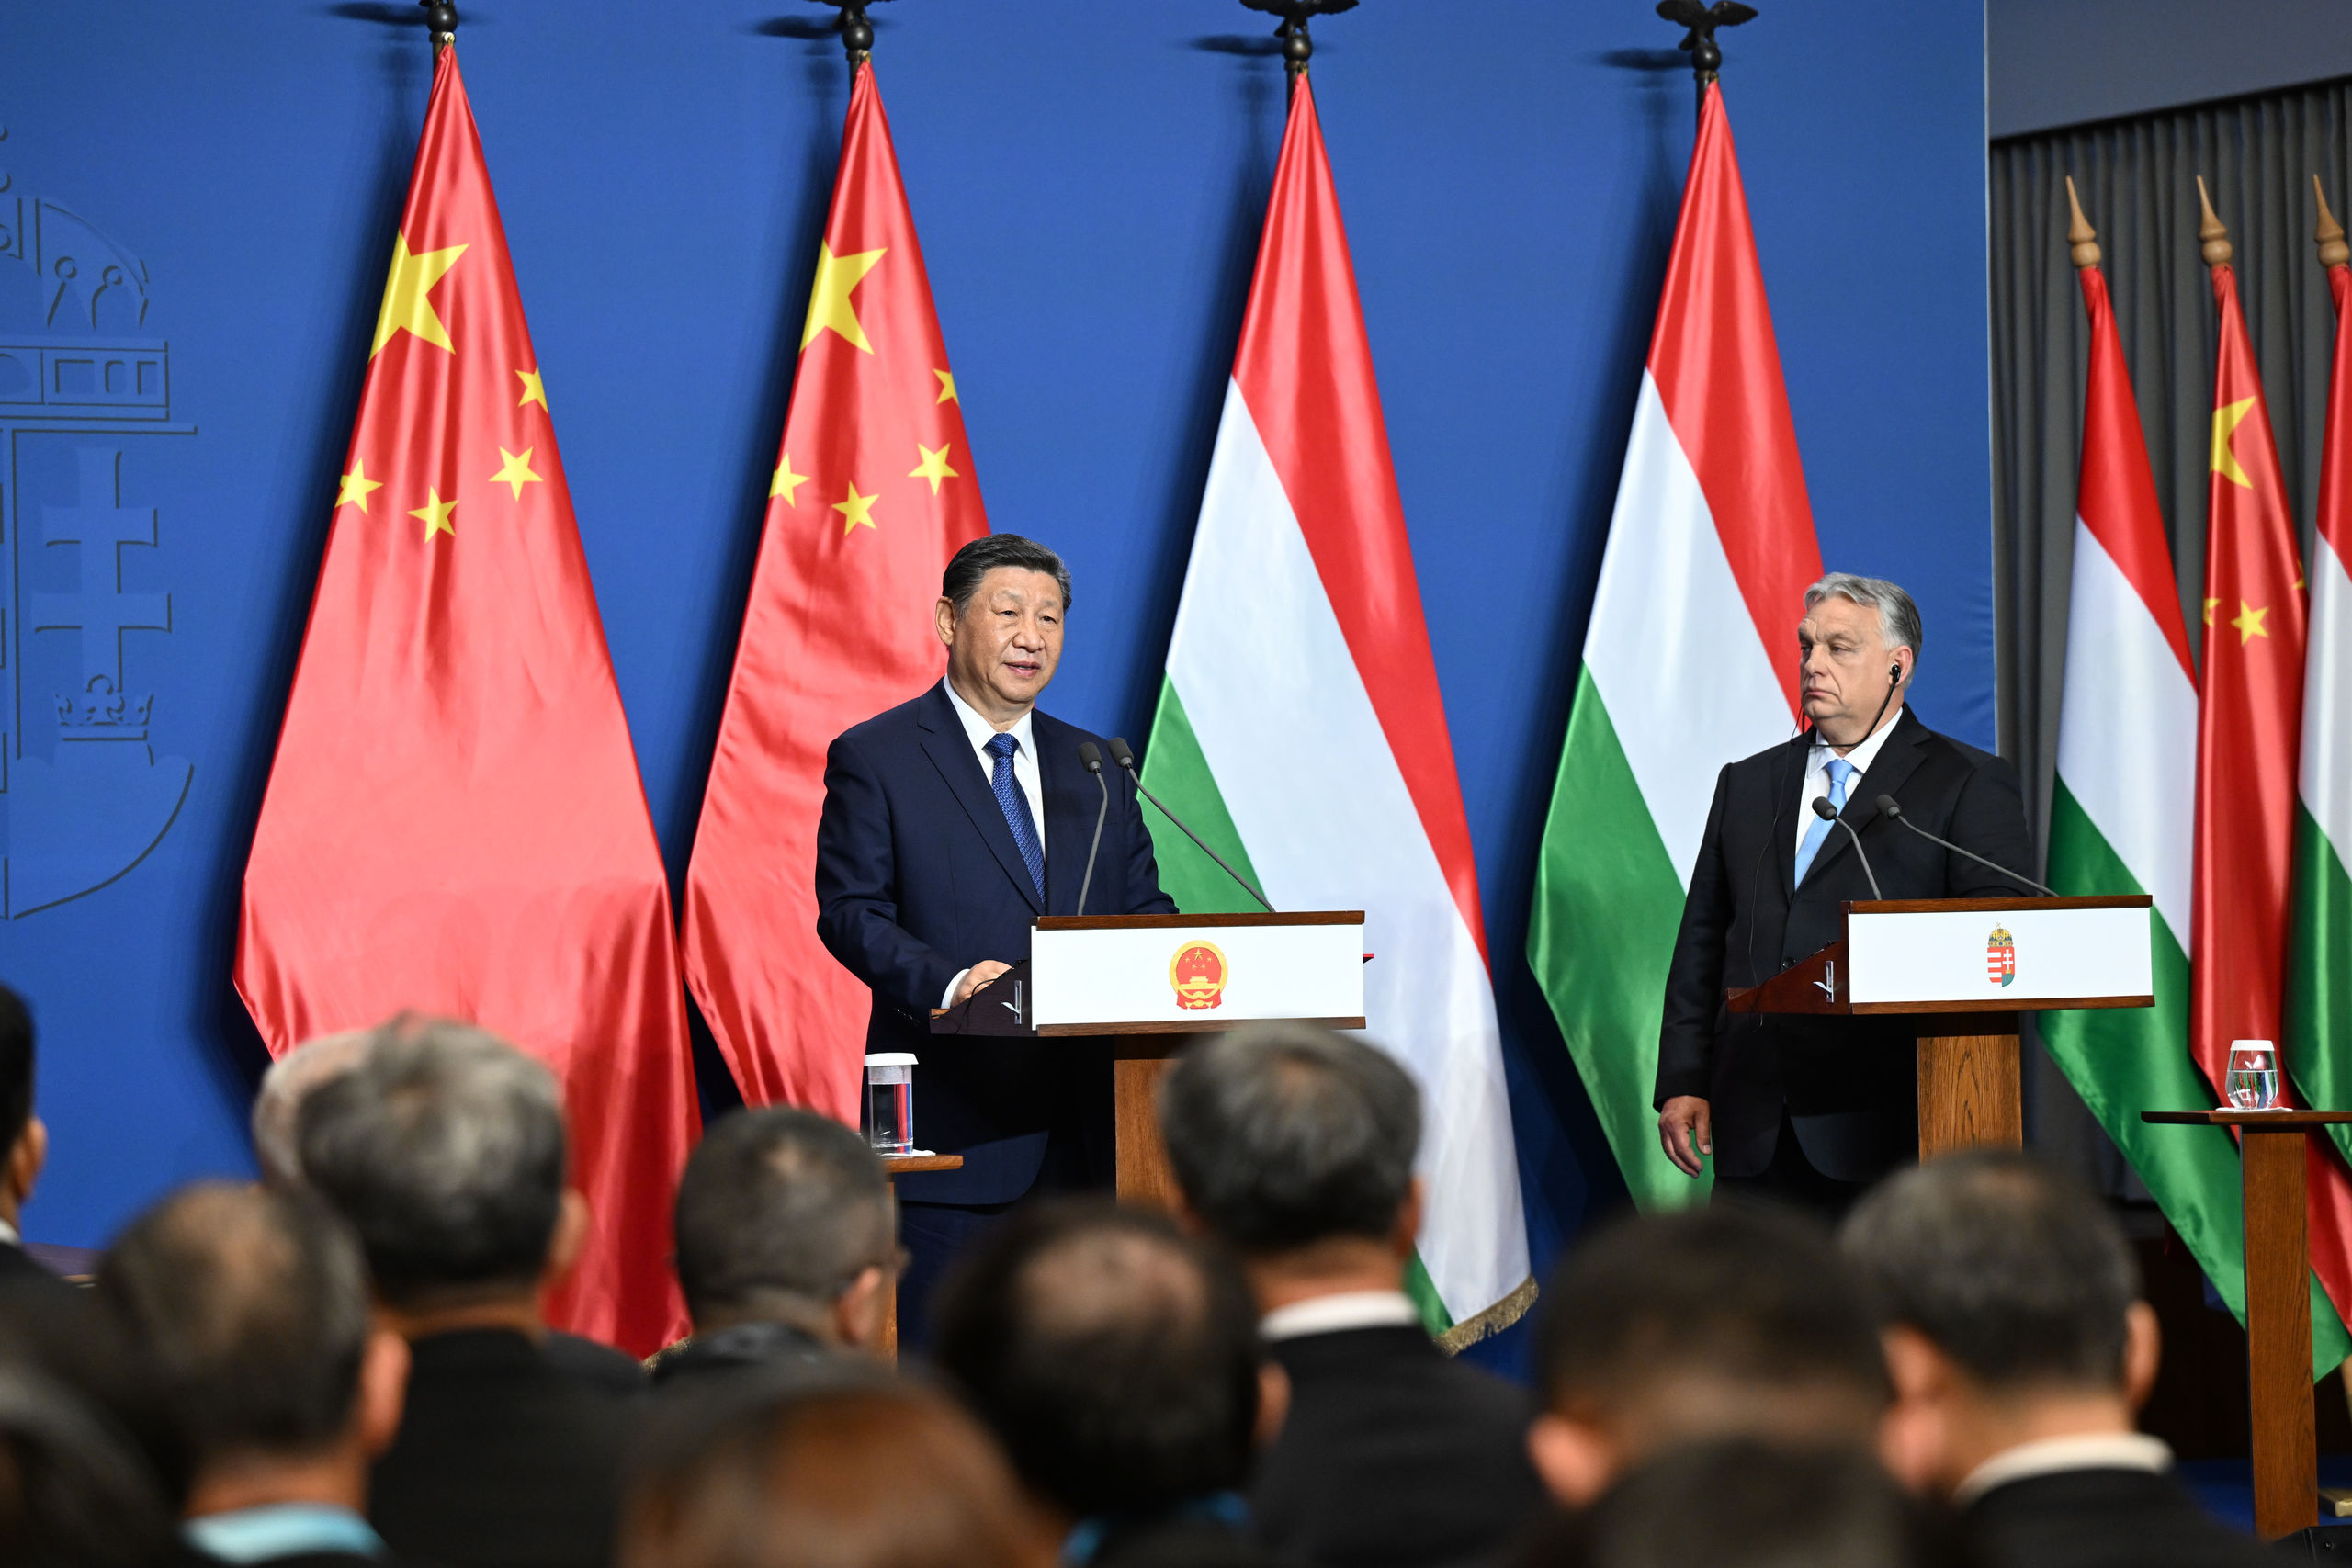 Orbán también viaja a China para hablar de la guerra de Ucrania con Xi Jinping tras reunirse con Putin